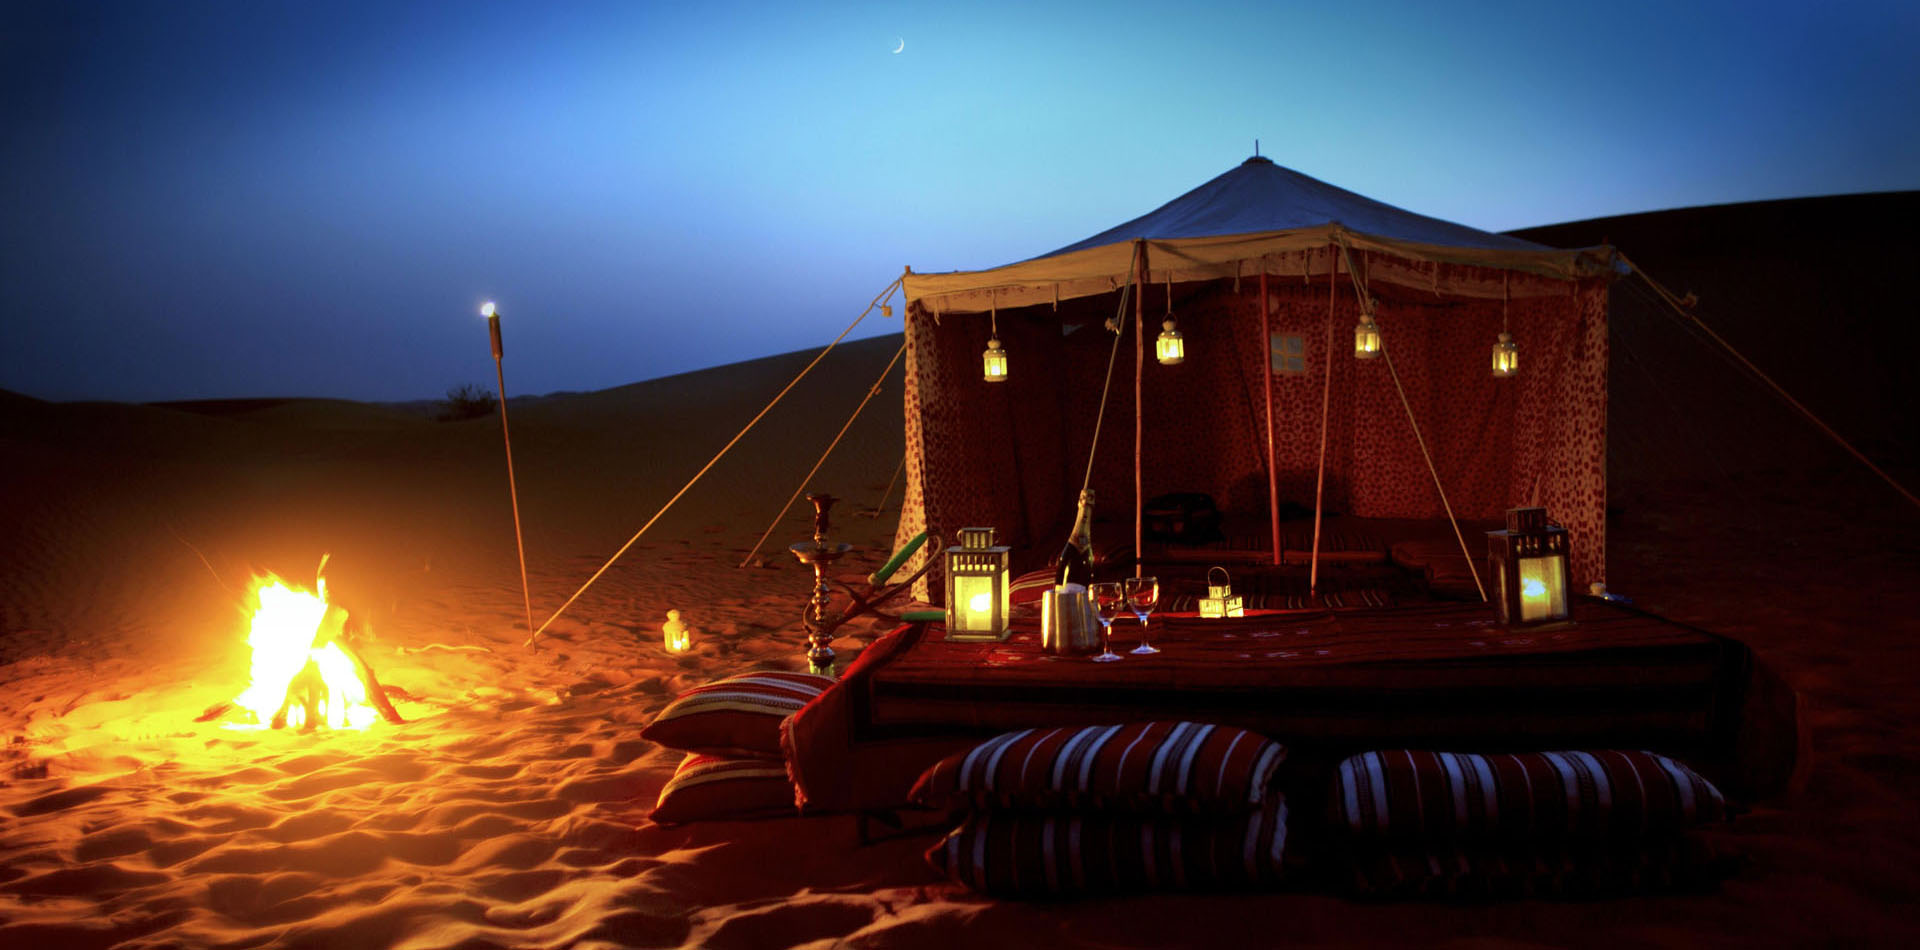 desert safari dubai arabian nights